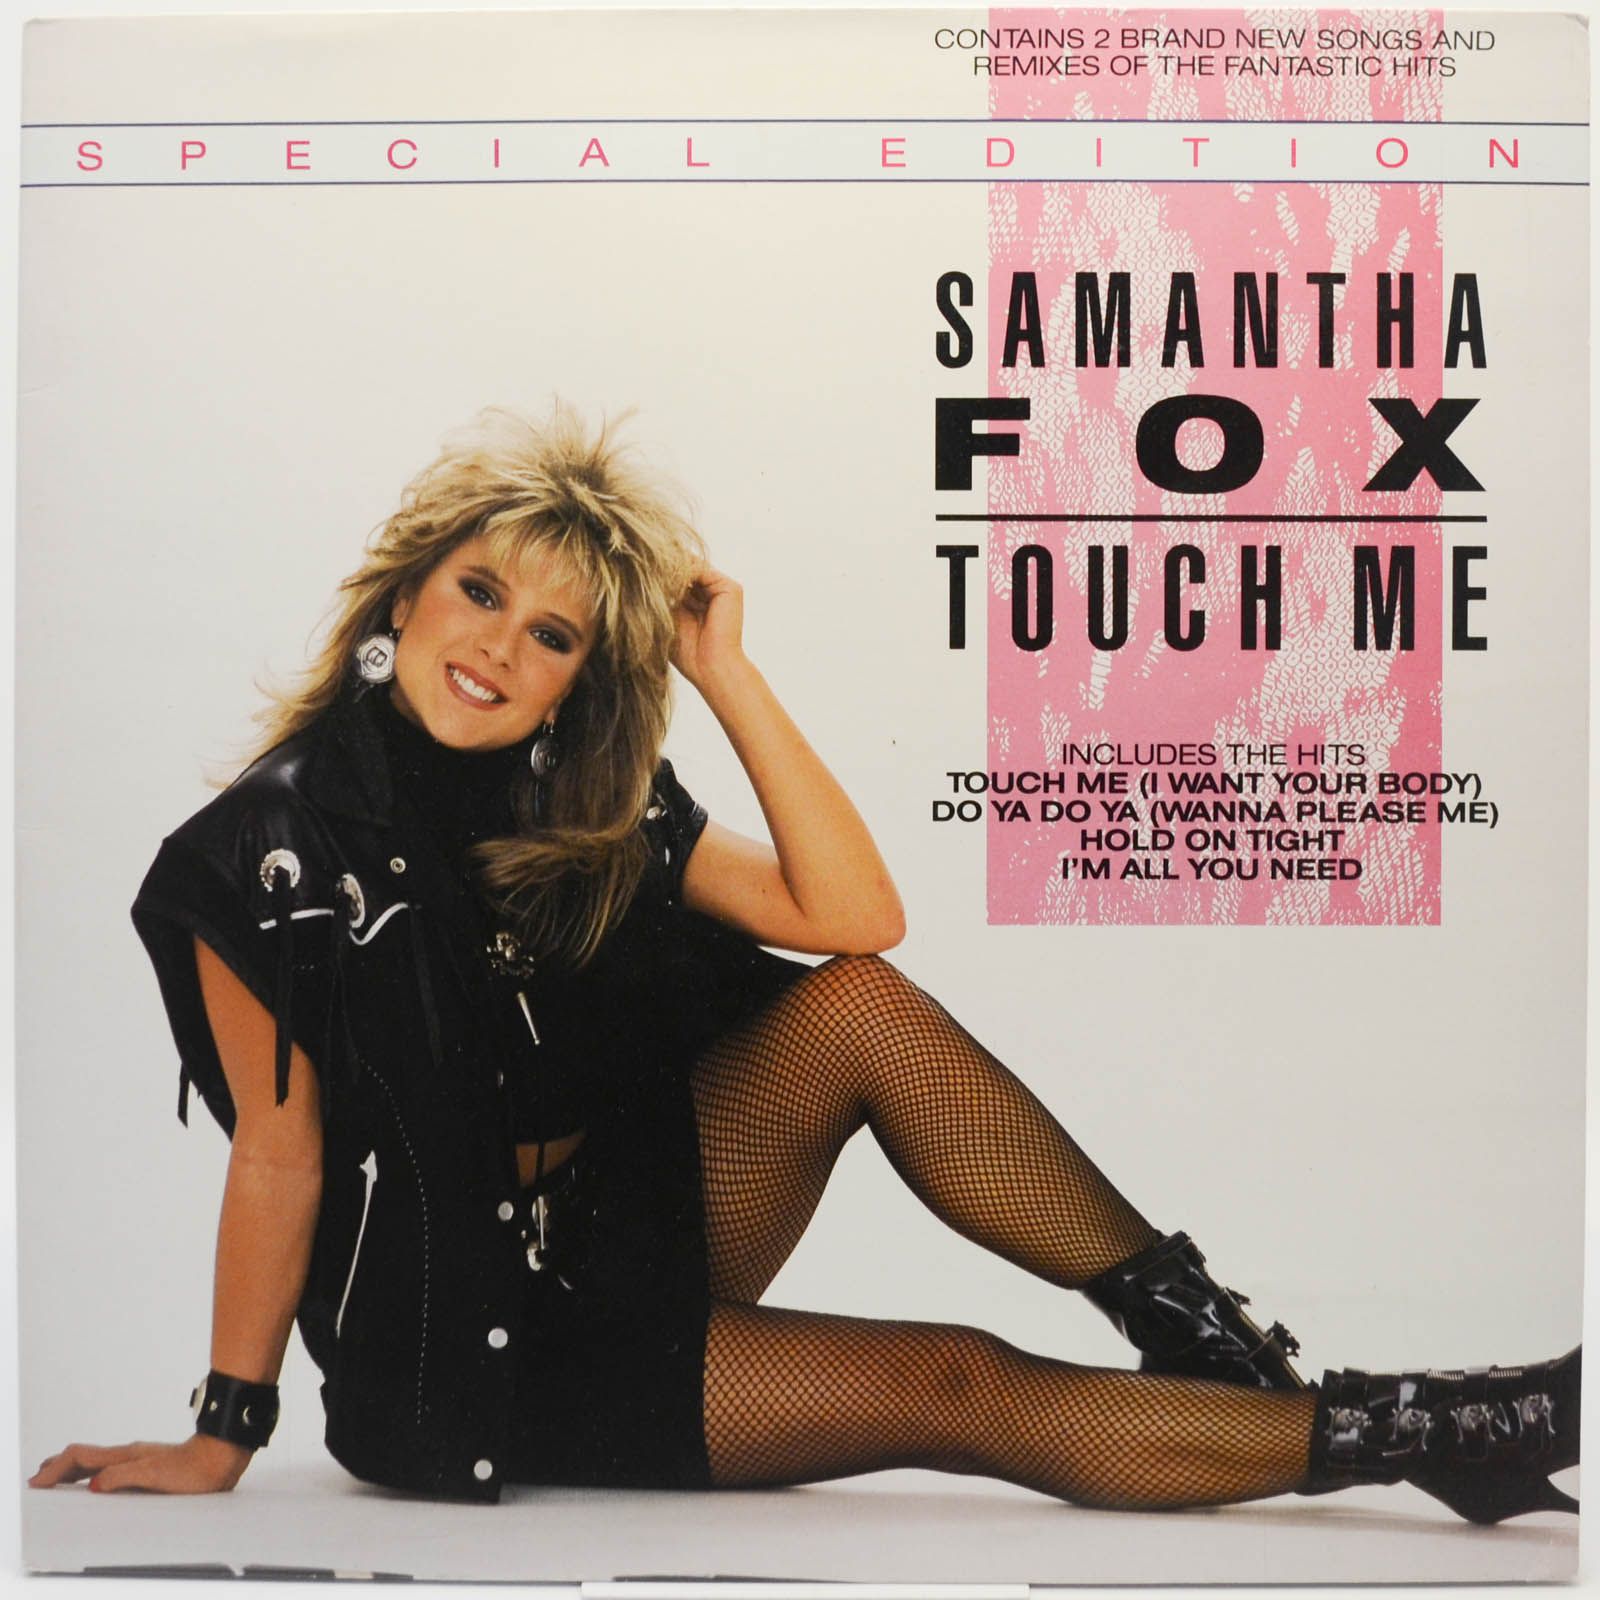 Samantha Fox — Touch Me, 1986